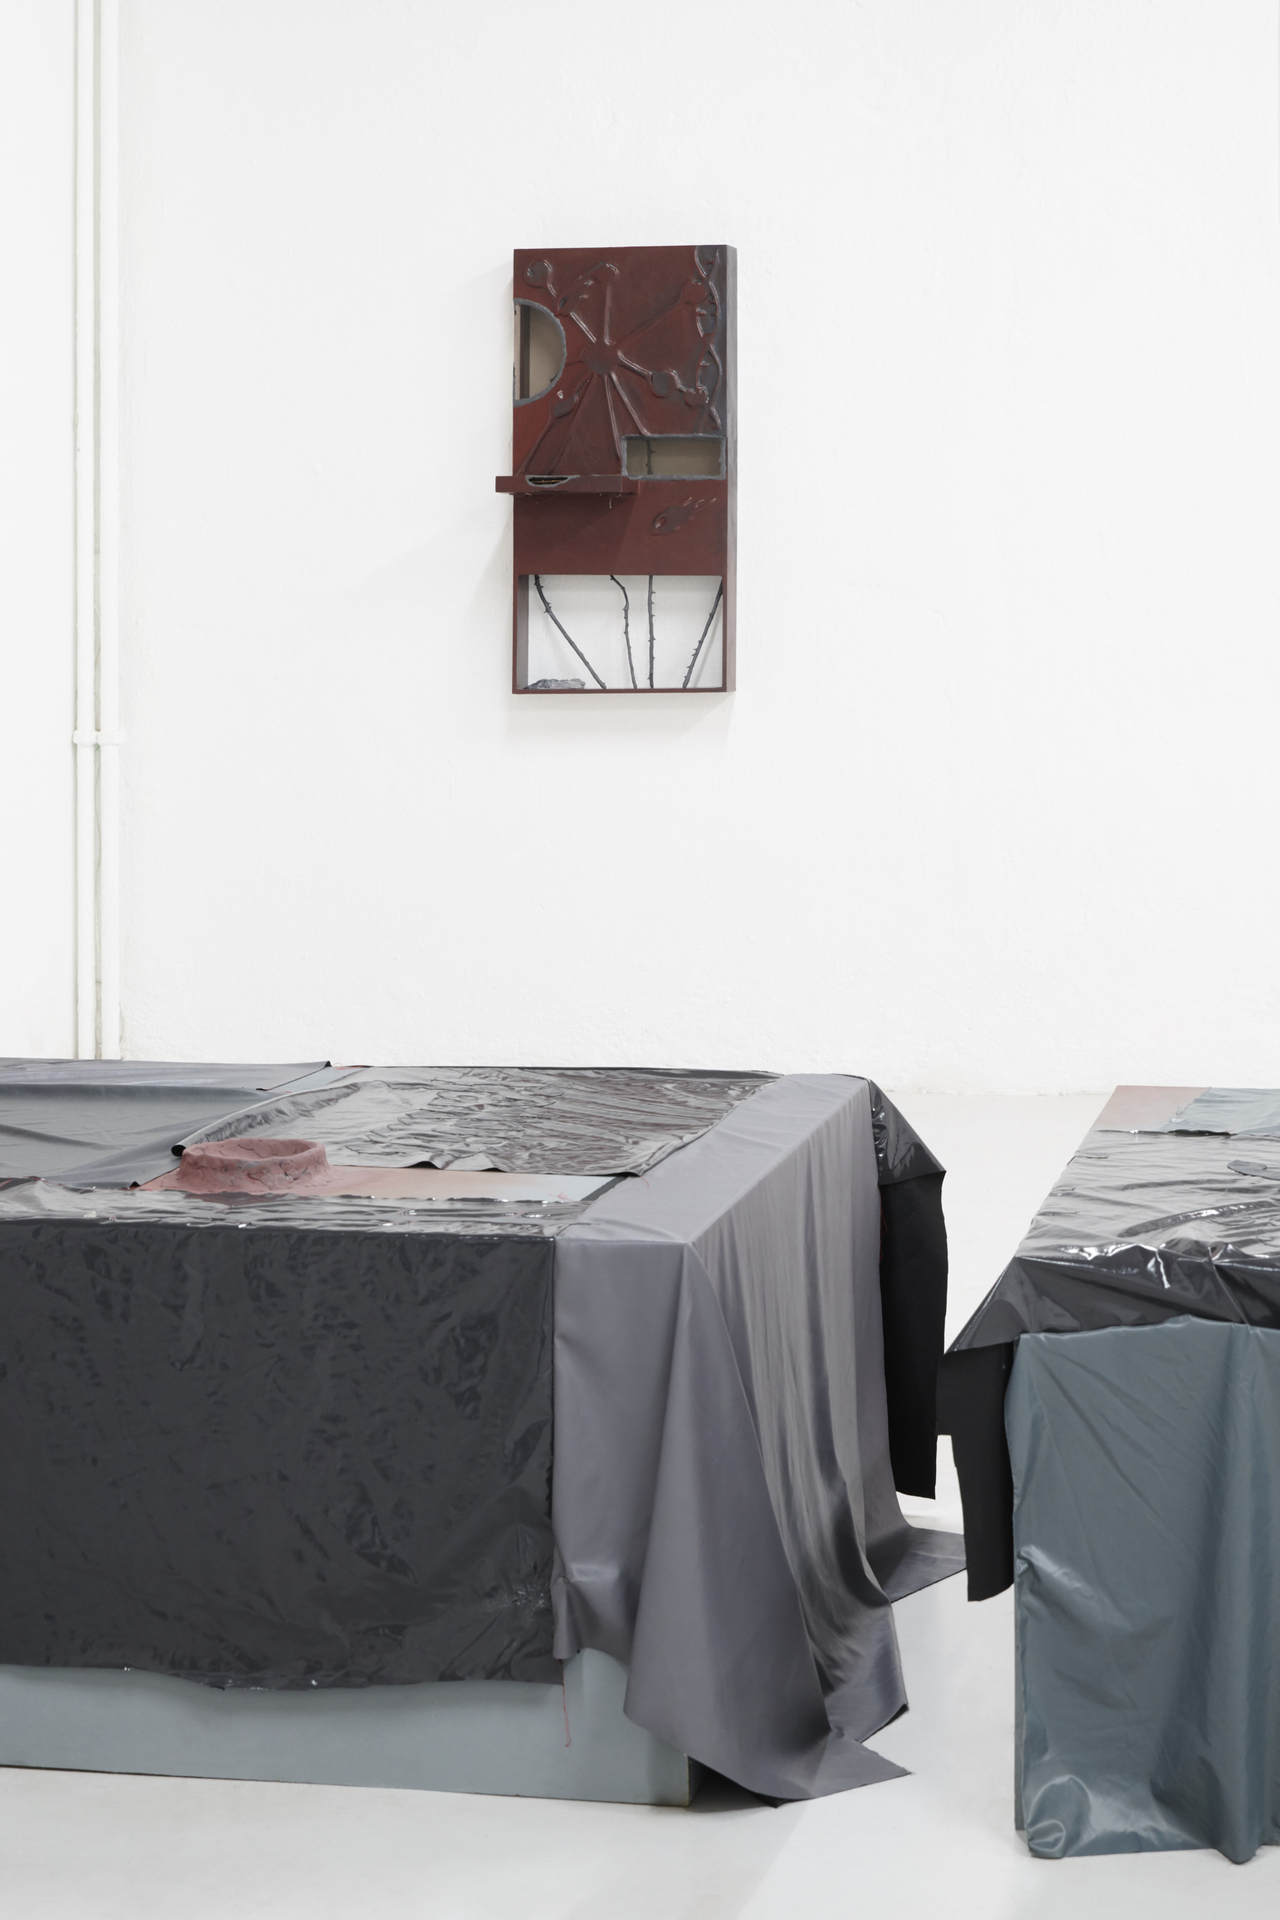 Loucia Carlier, Deep Fake, 2021, exhibition view